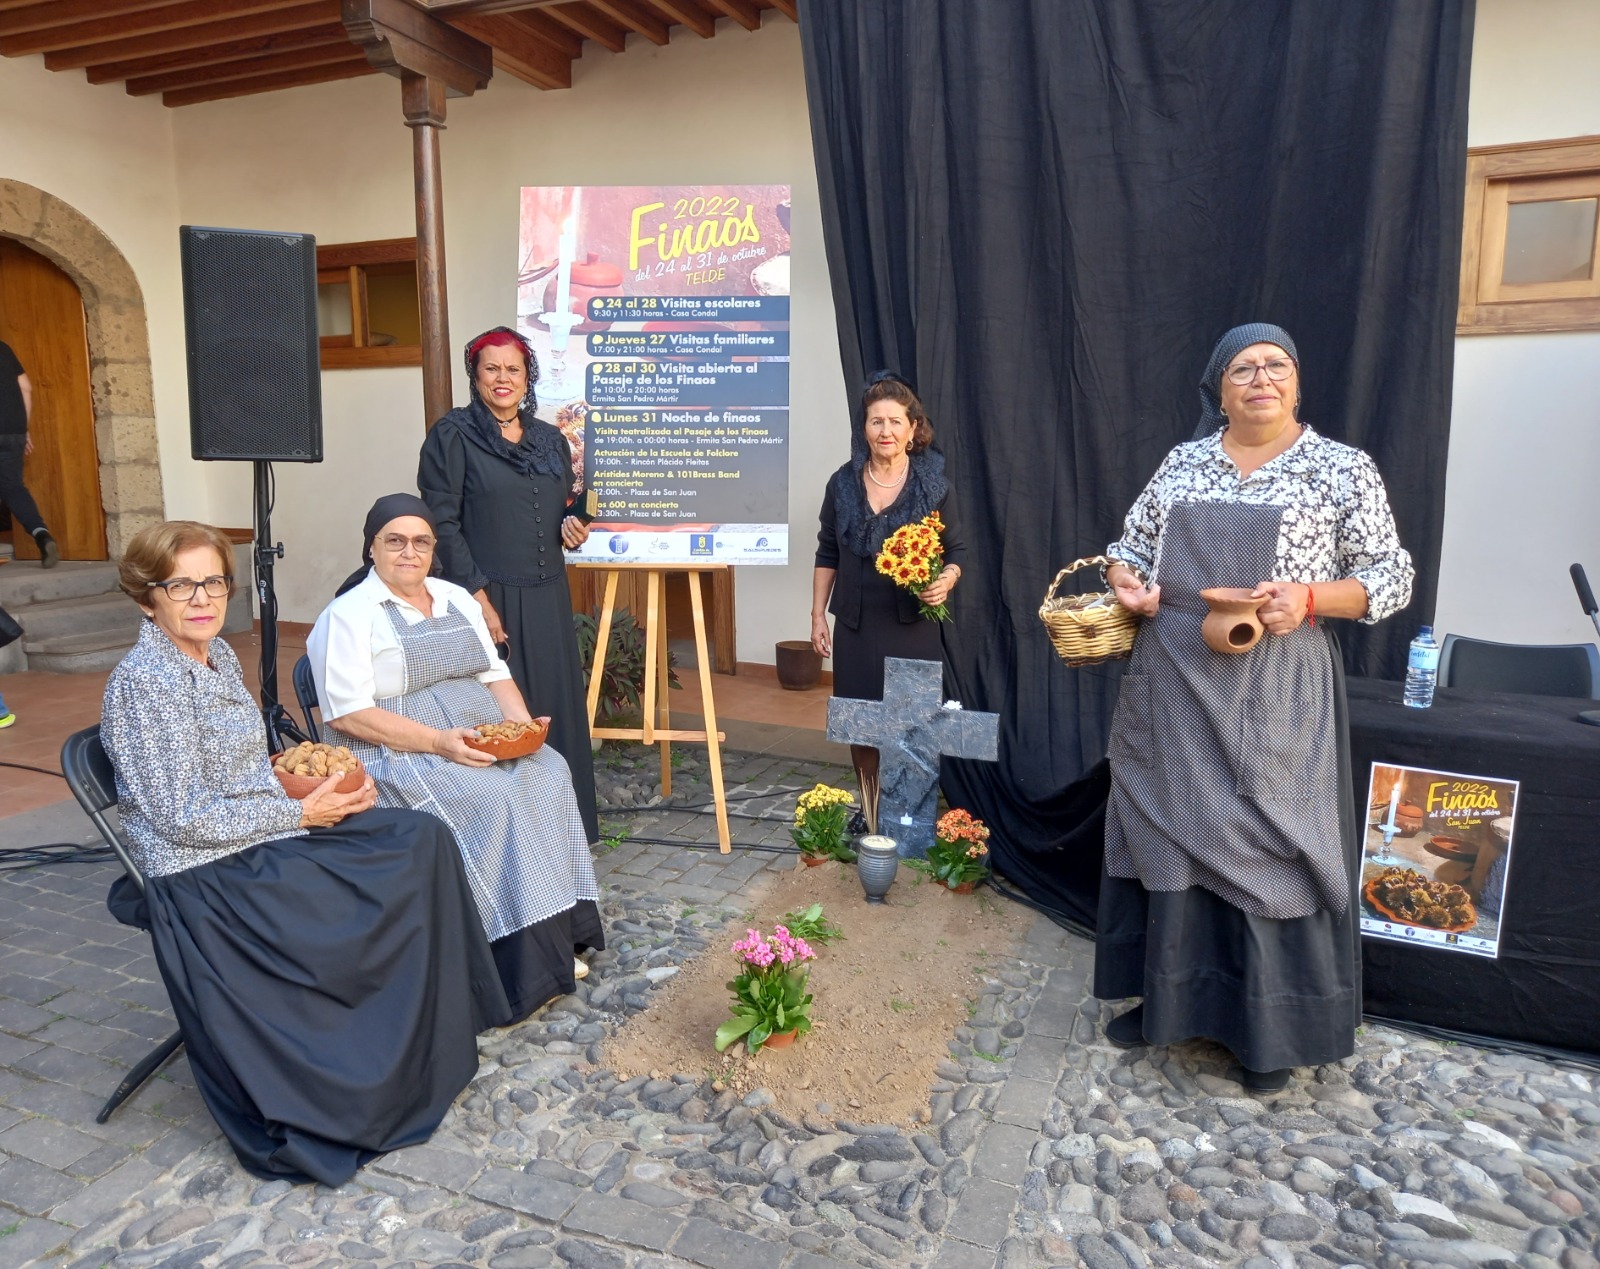  FEDAC y el Ayuntamiento de Telde celebran el Día de los Finaos con muestras escénicas, teatro, folclore y los conciertos de Los 600 y Arístides Moreno